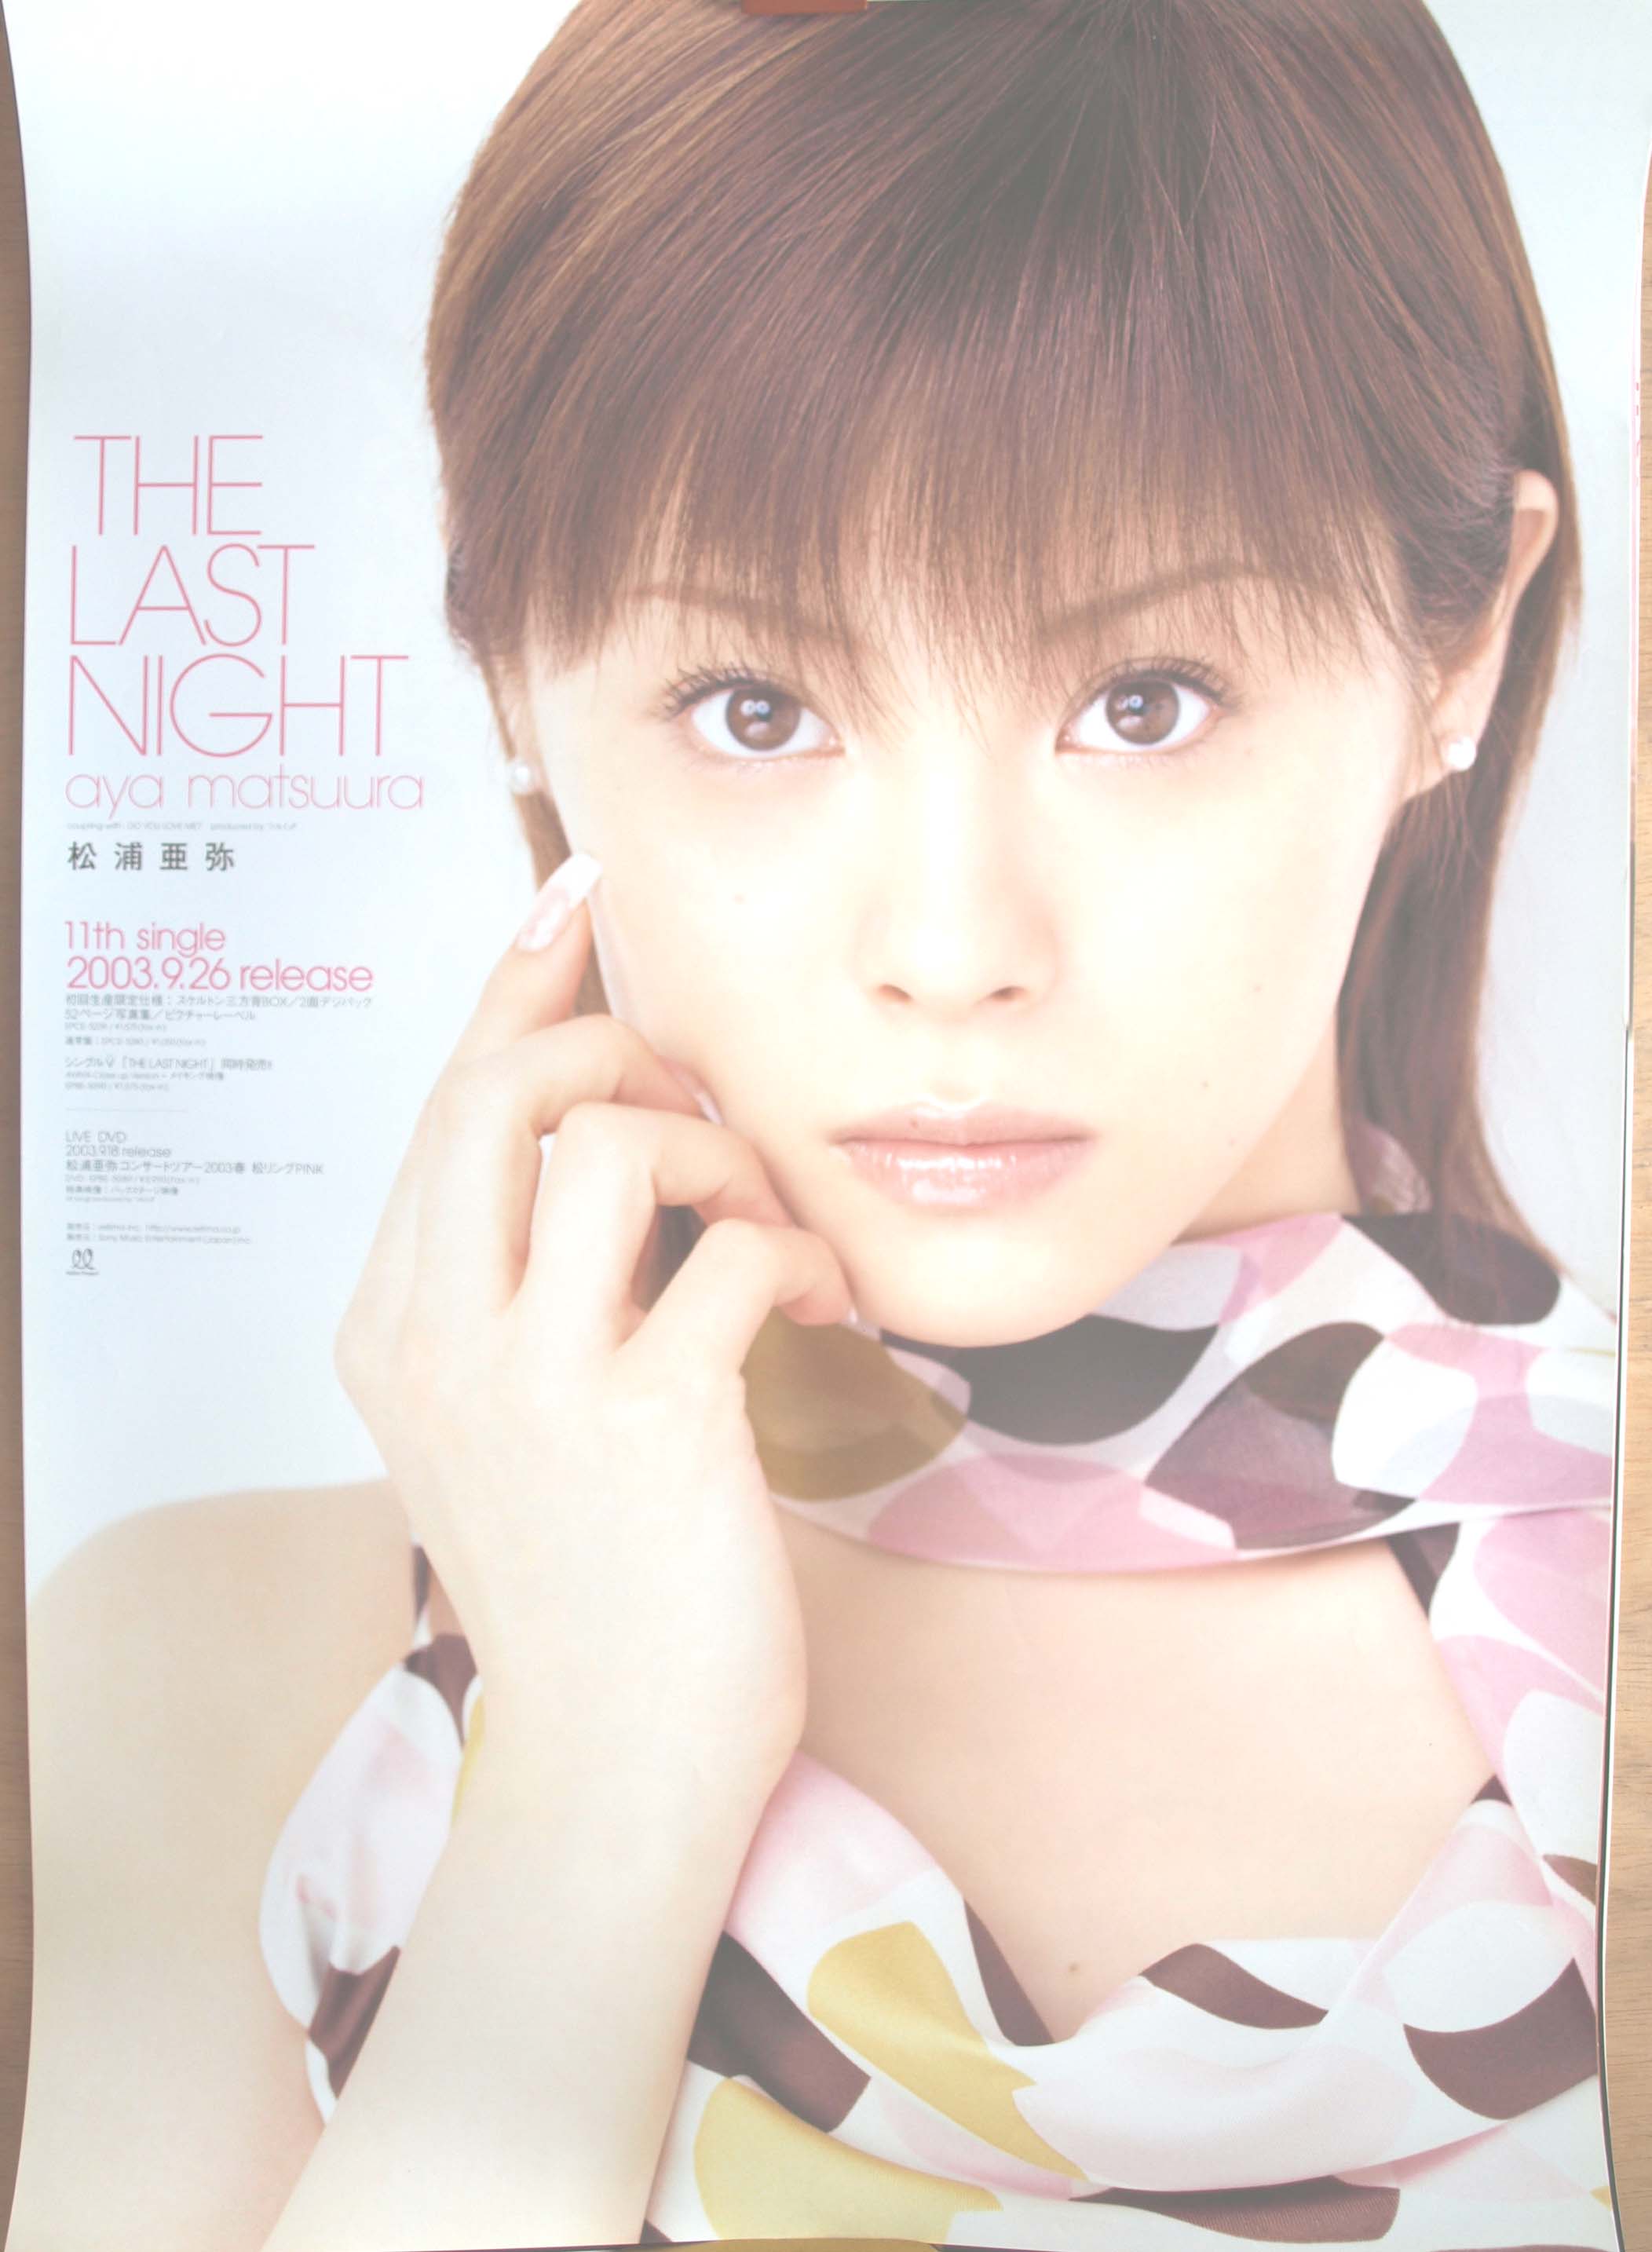 松浦亜弥 「THE LAST NIGHT」のポスター